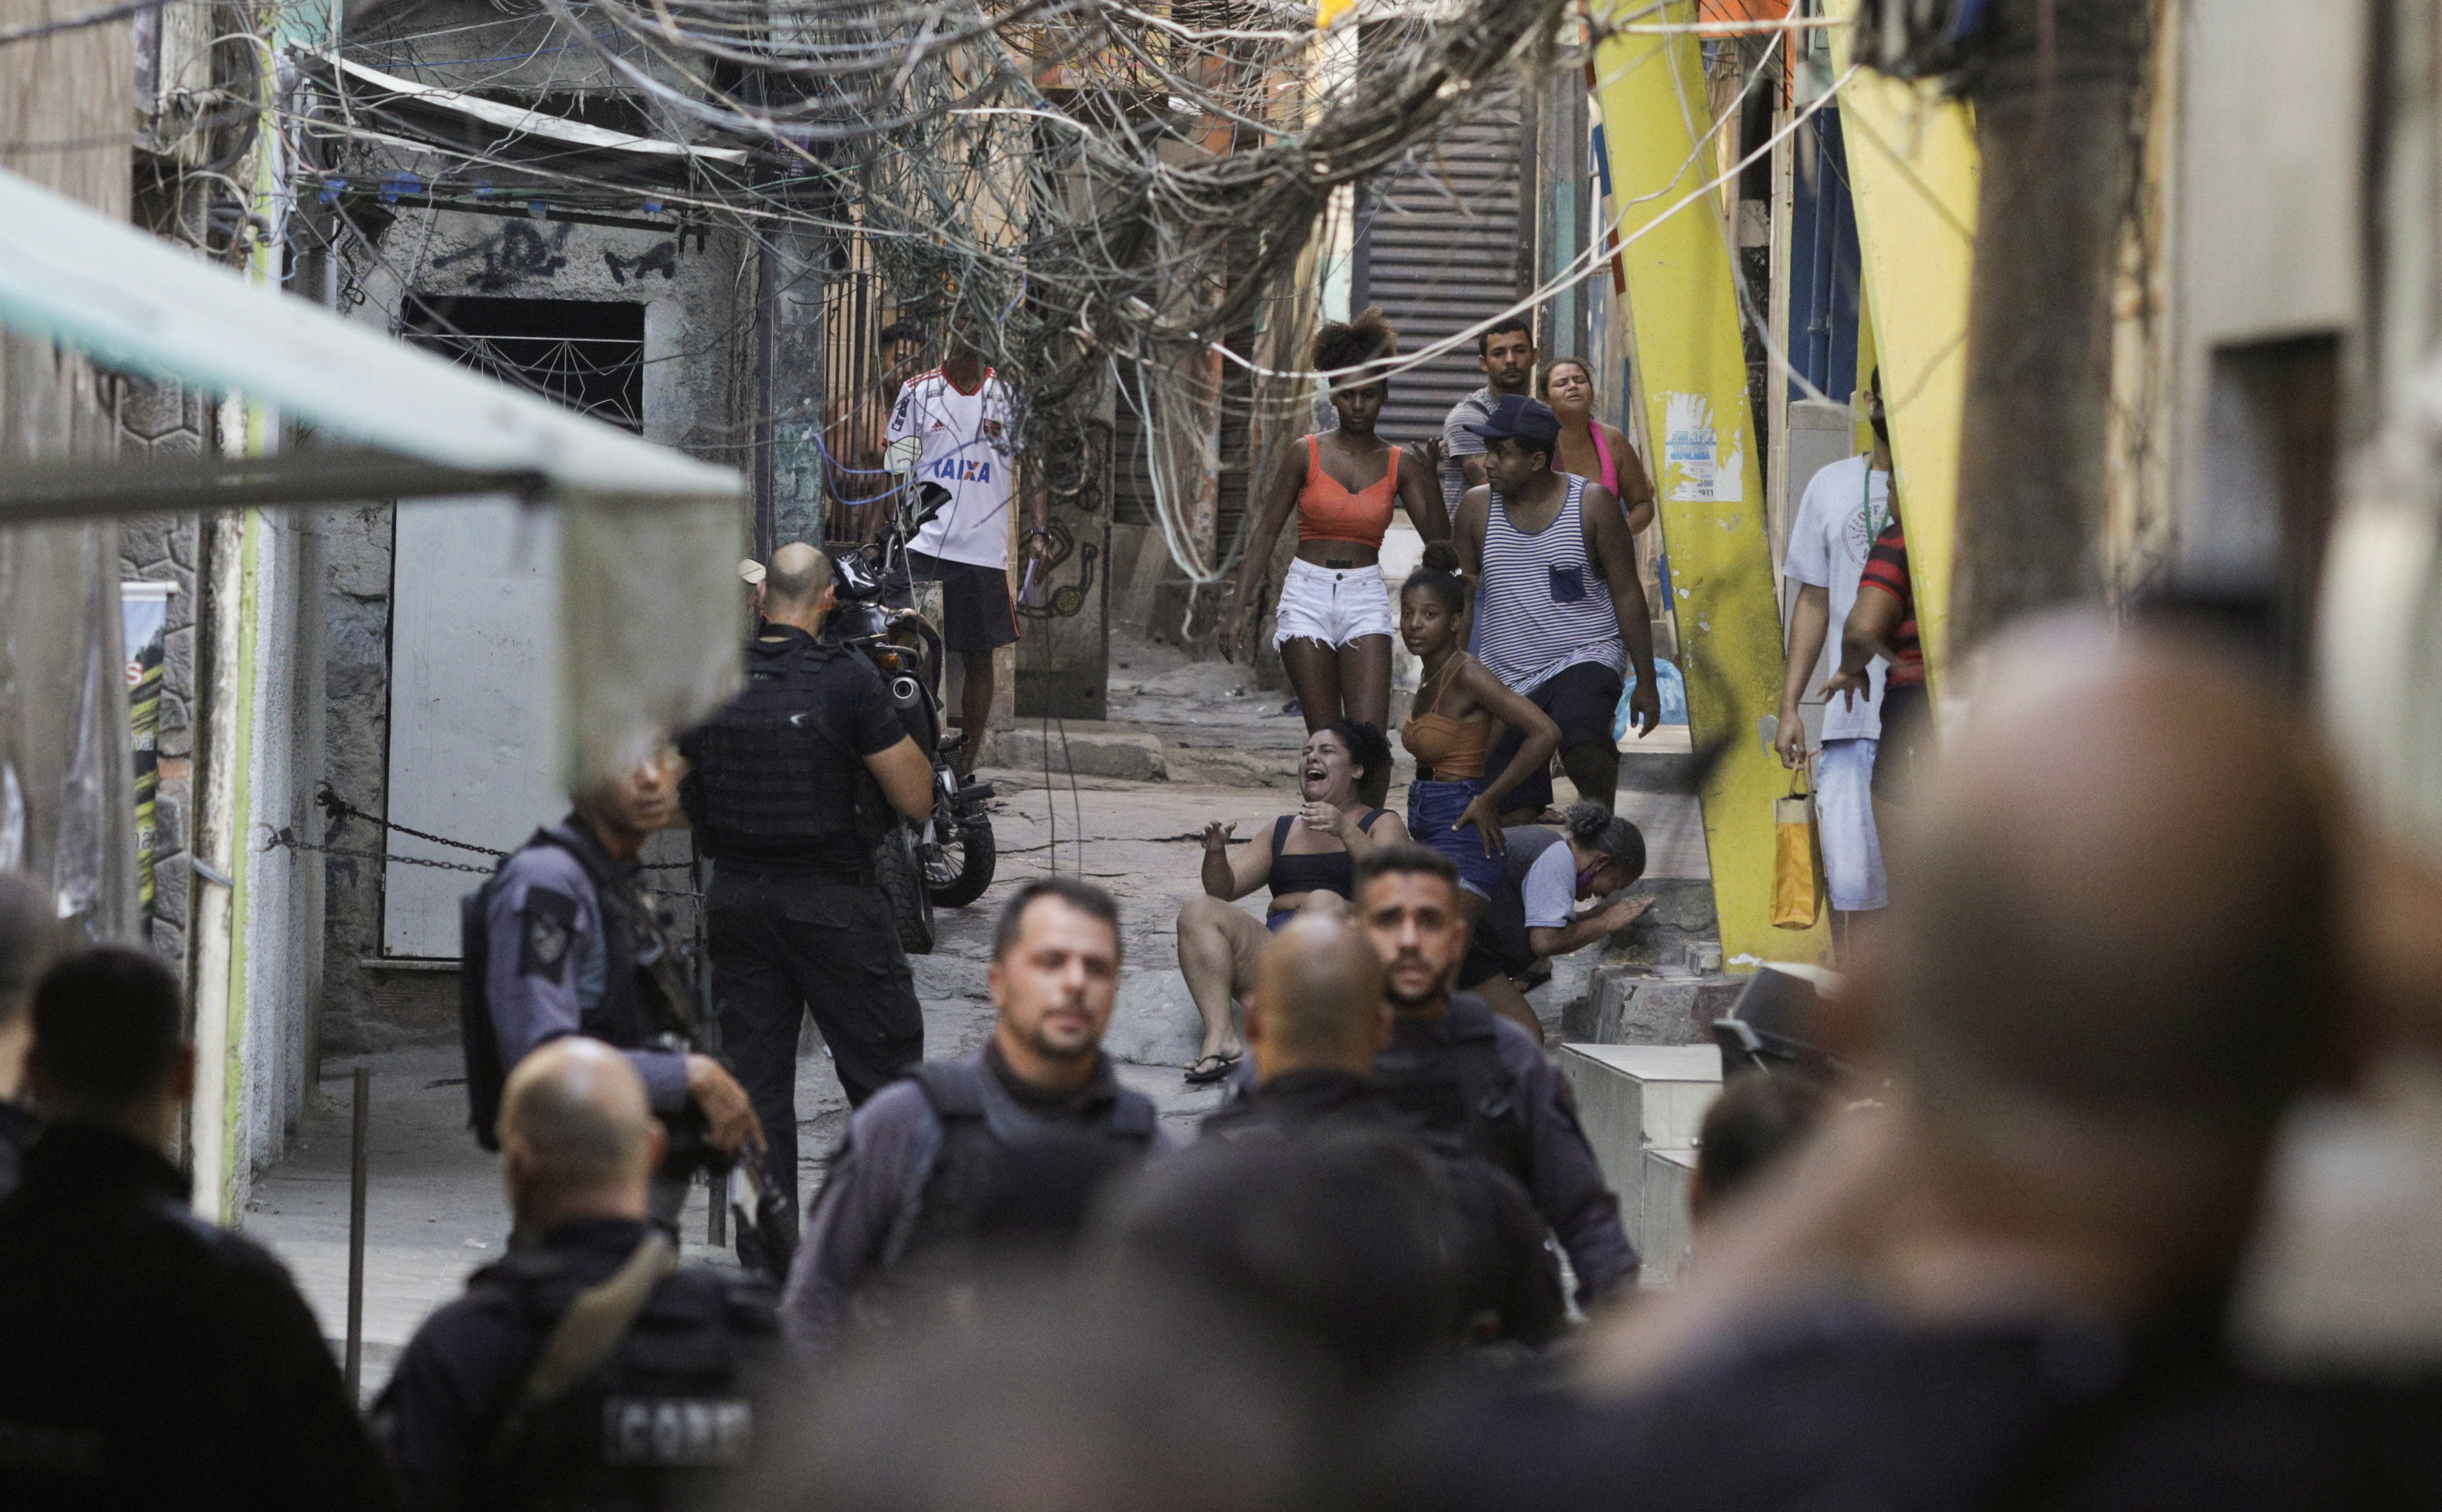 Police operation at Jacarezinho slum in Rio de Janeiro